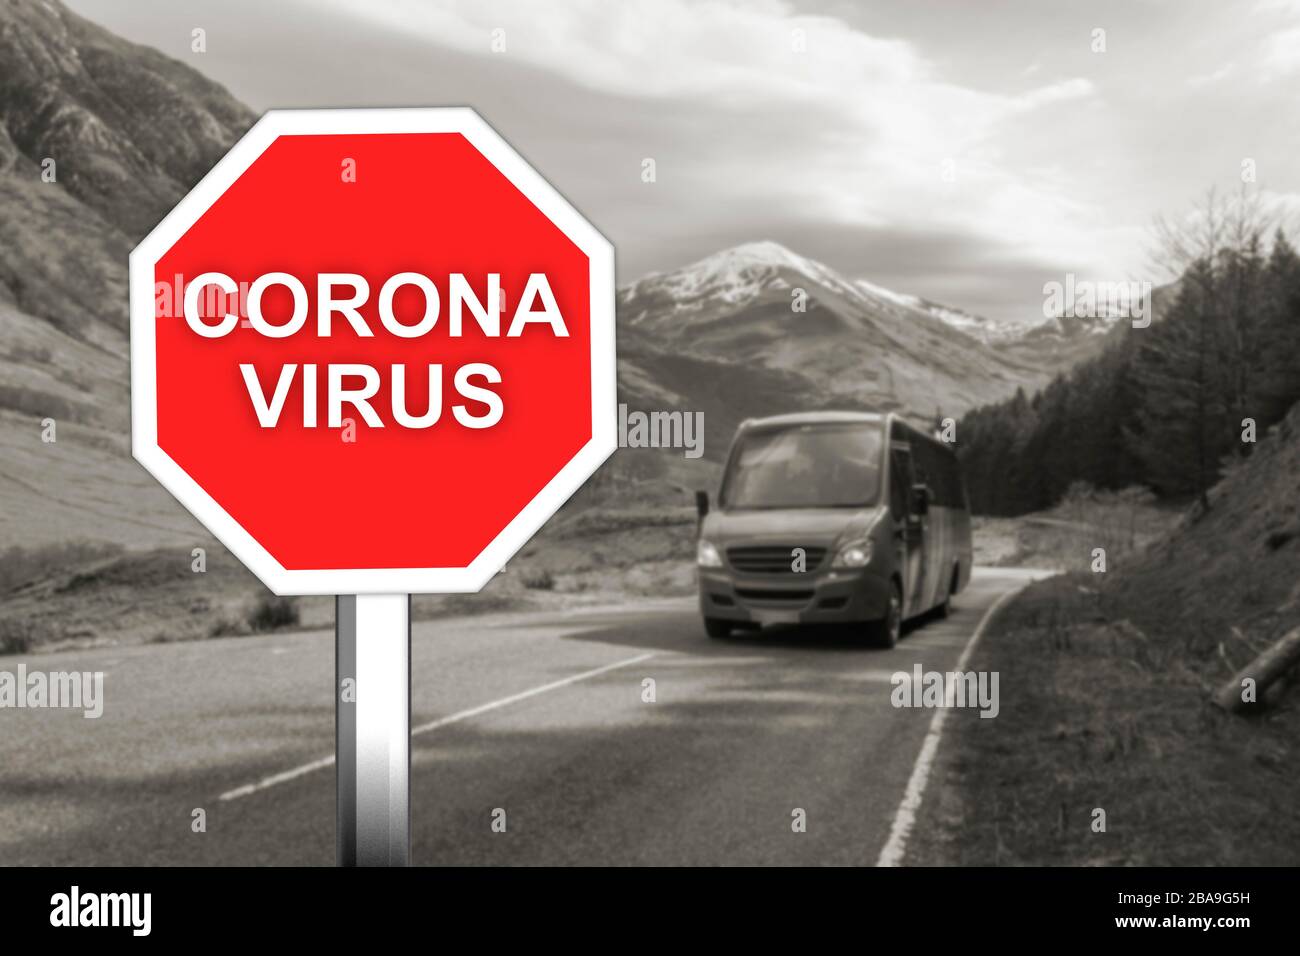 Corona virus warning sign on the mountain road Stock Photo